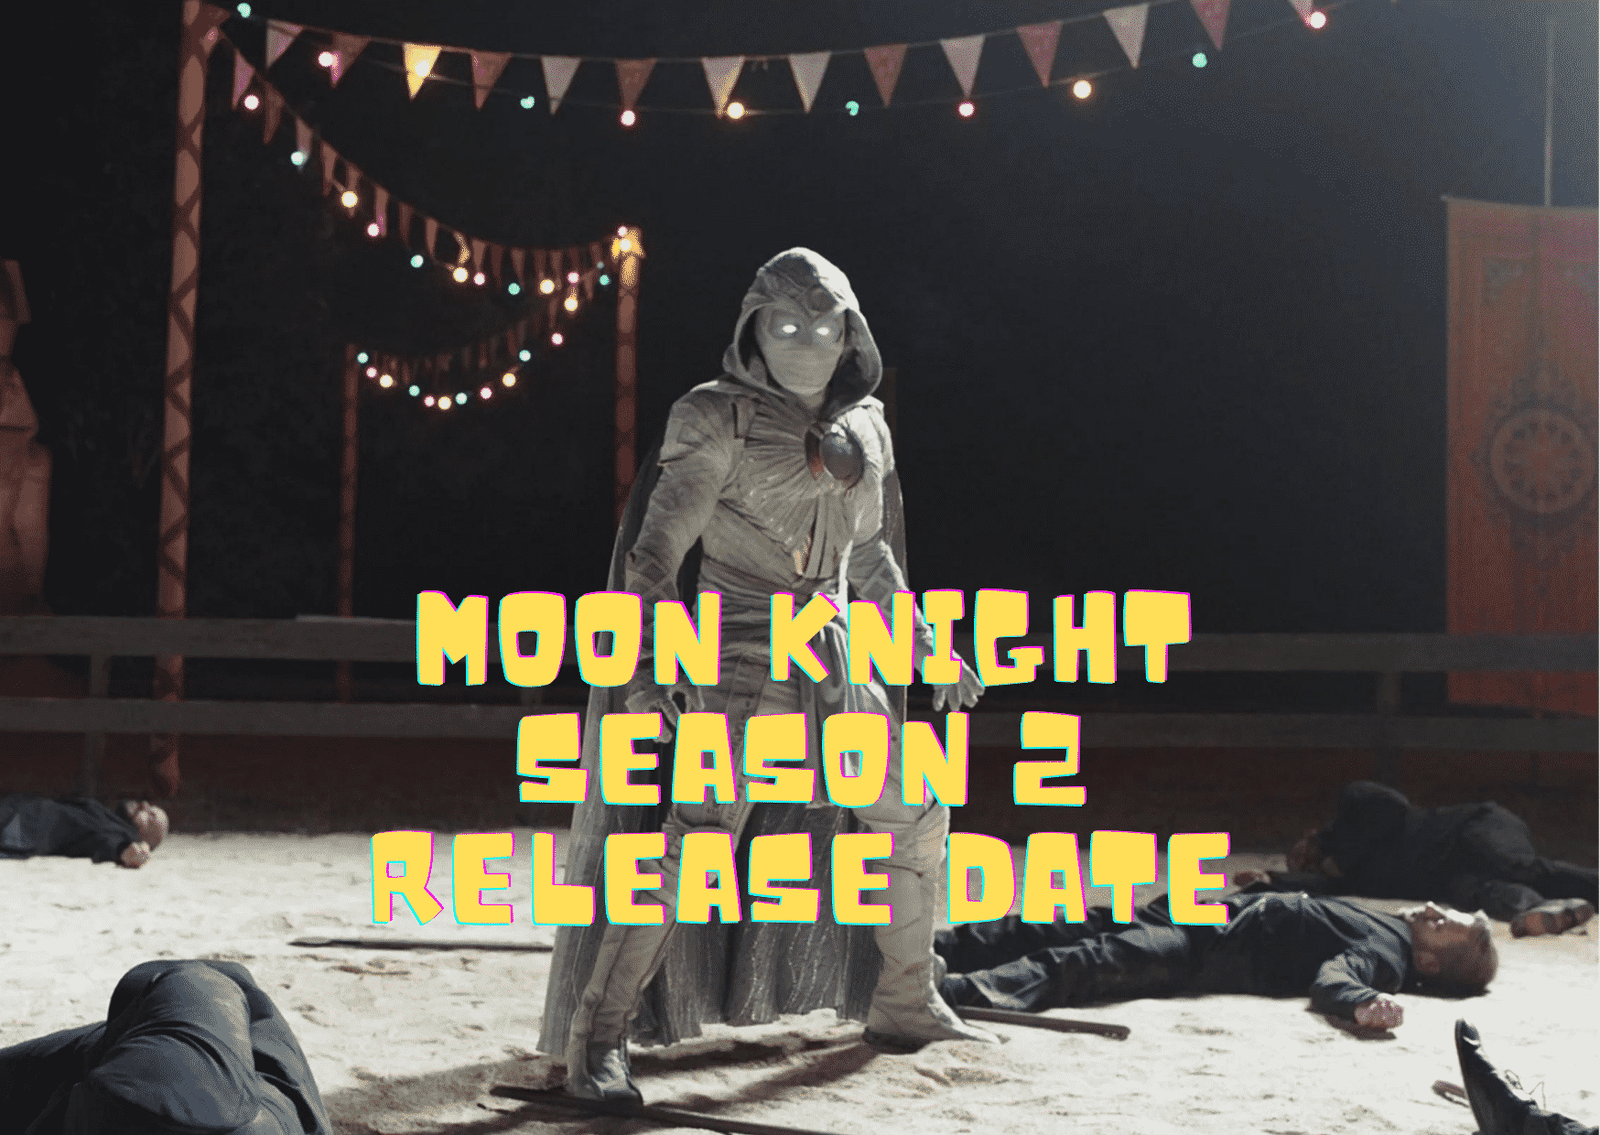 Moon Knight Season 2 Release Date, Trailer - Is it Canceled?